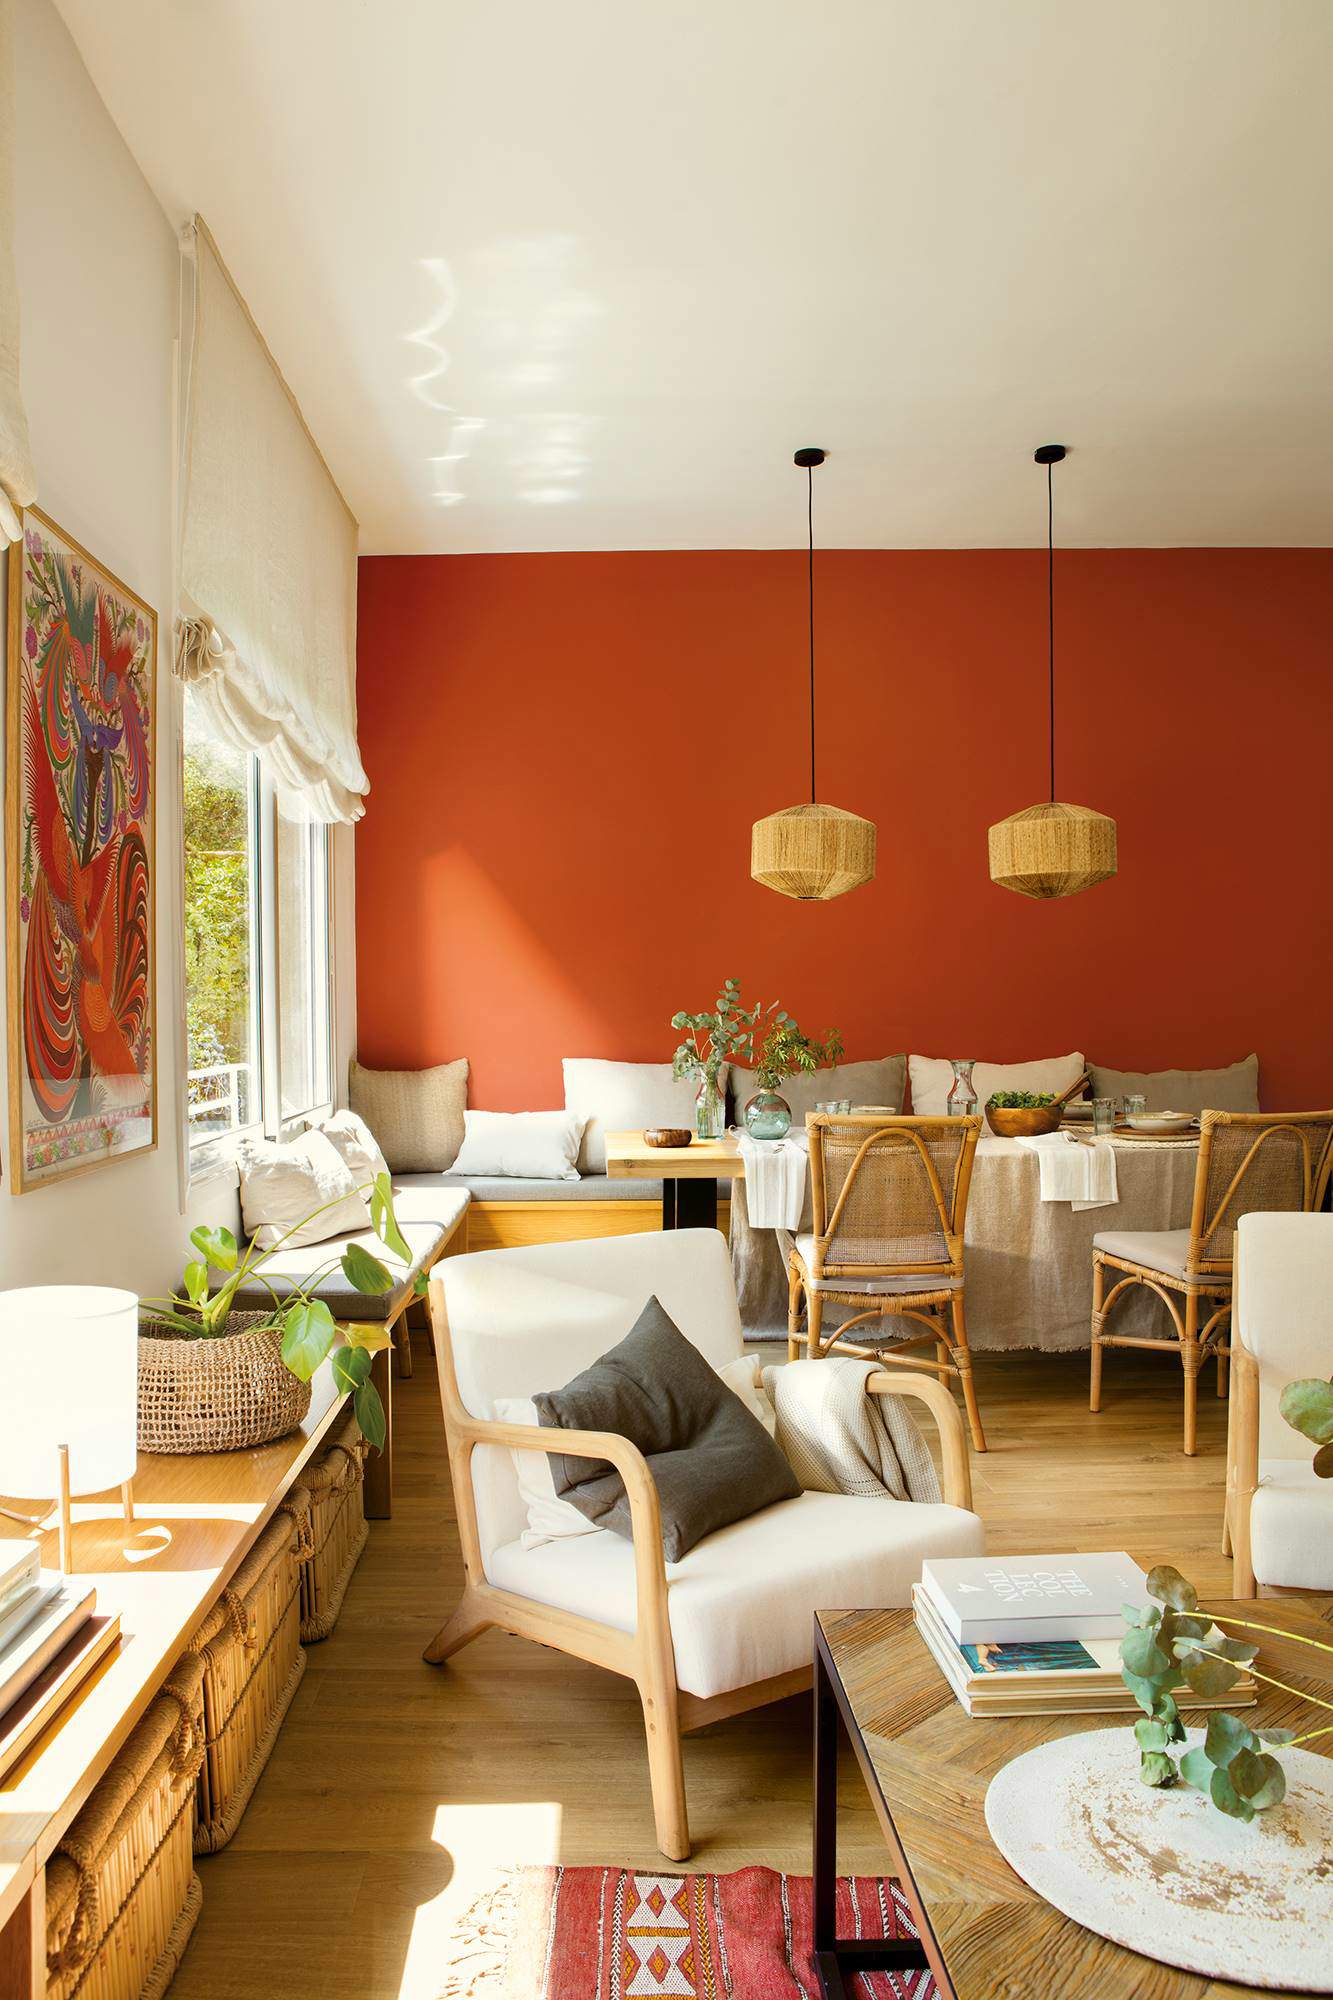 Salón abierto al comedor de estilo rústico con pared pintada de color terracota.